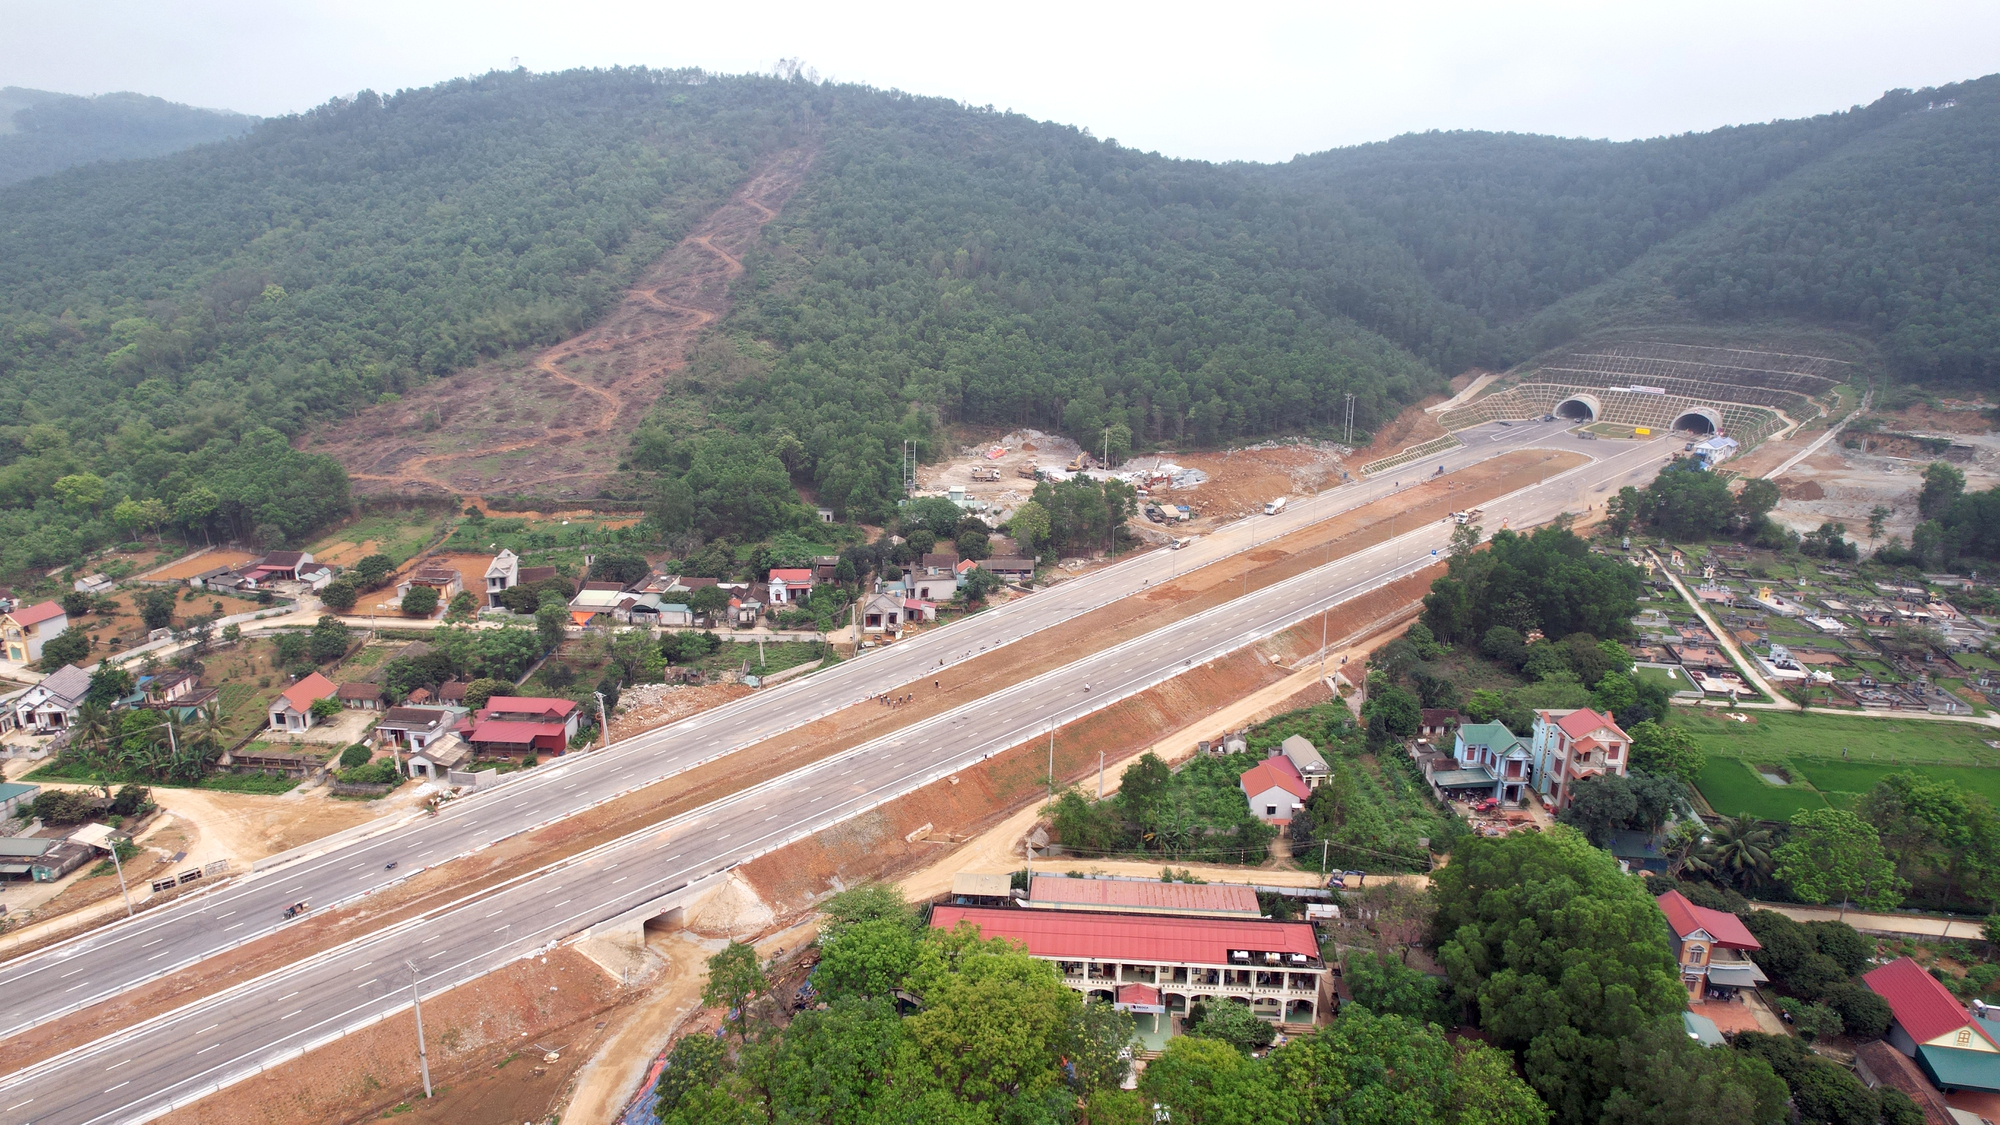 Hoàn thành hầm lớn nhất cao tốc Bắc - Nam qua Ninh Bình - Thanh Hóa  - Ảnh 2.